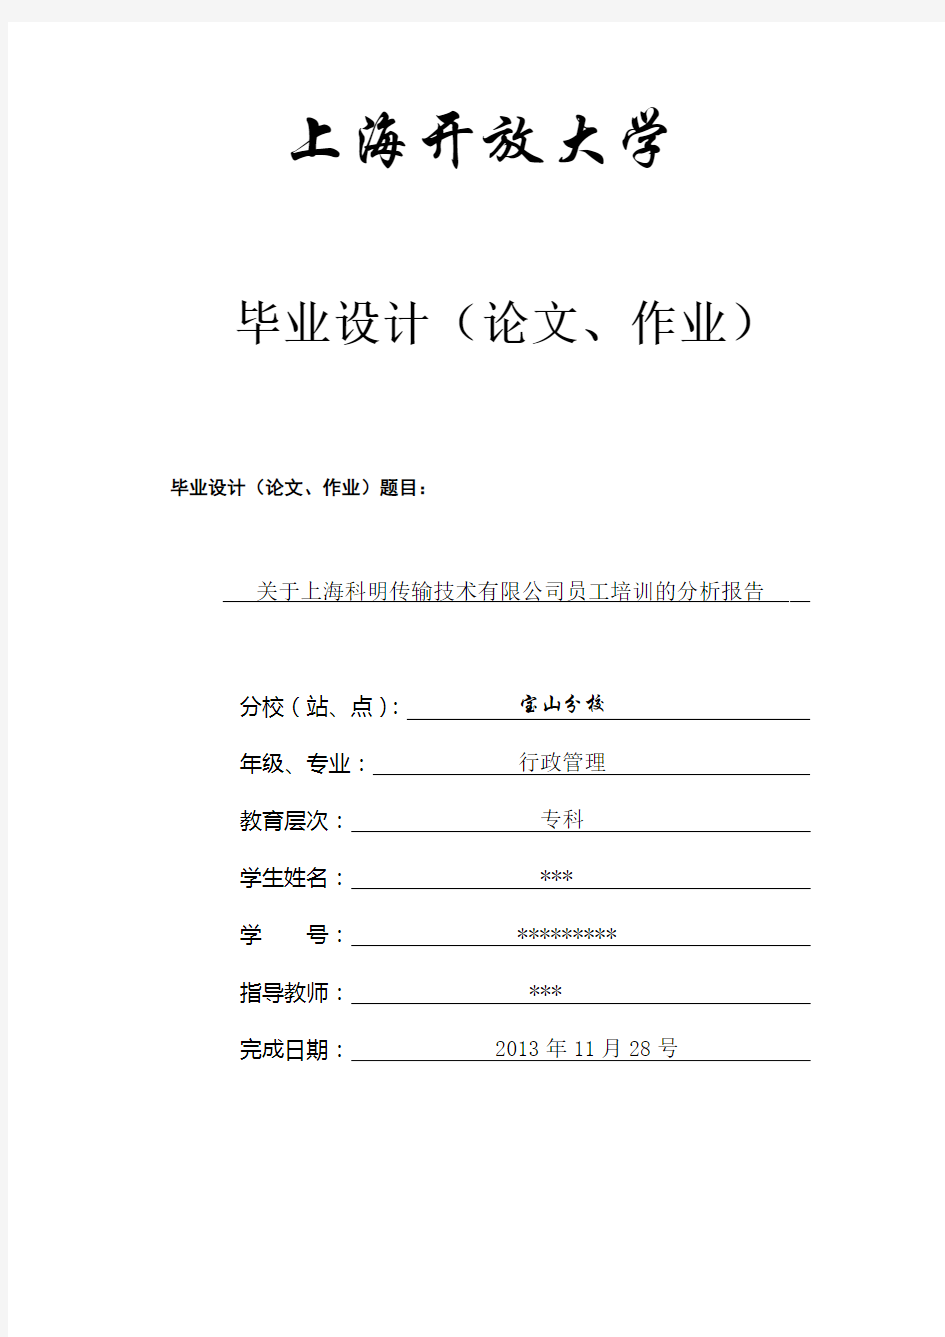 关于上海科明有限公司员工培训的分析报告